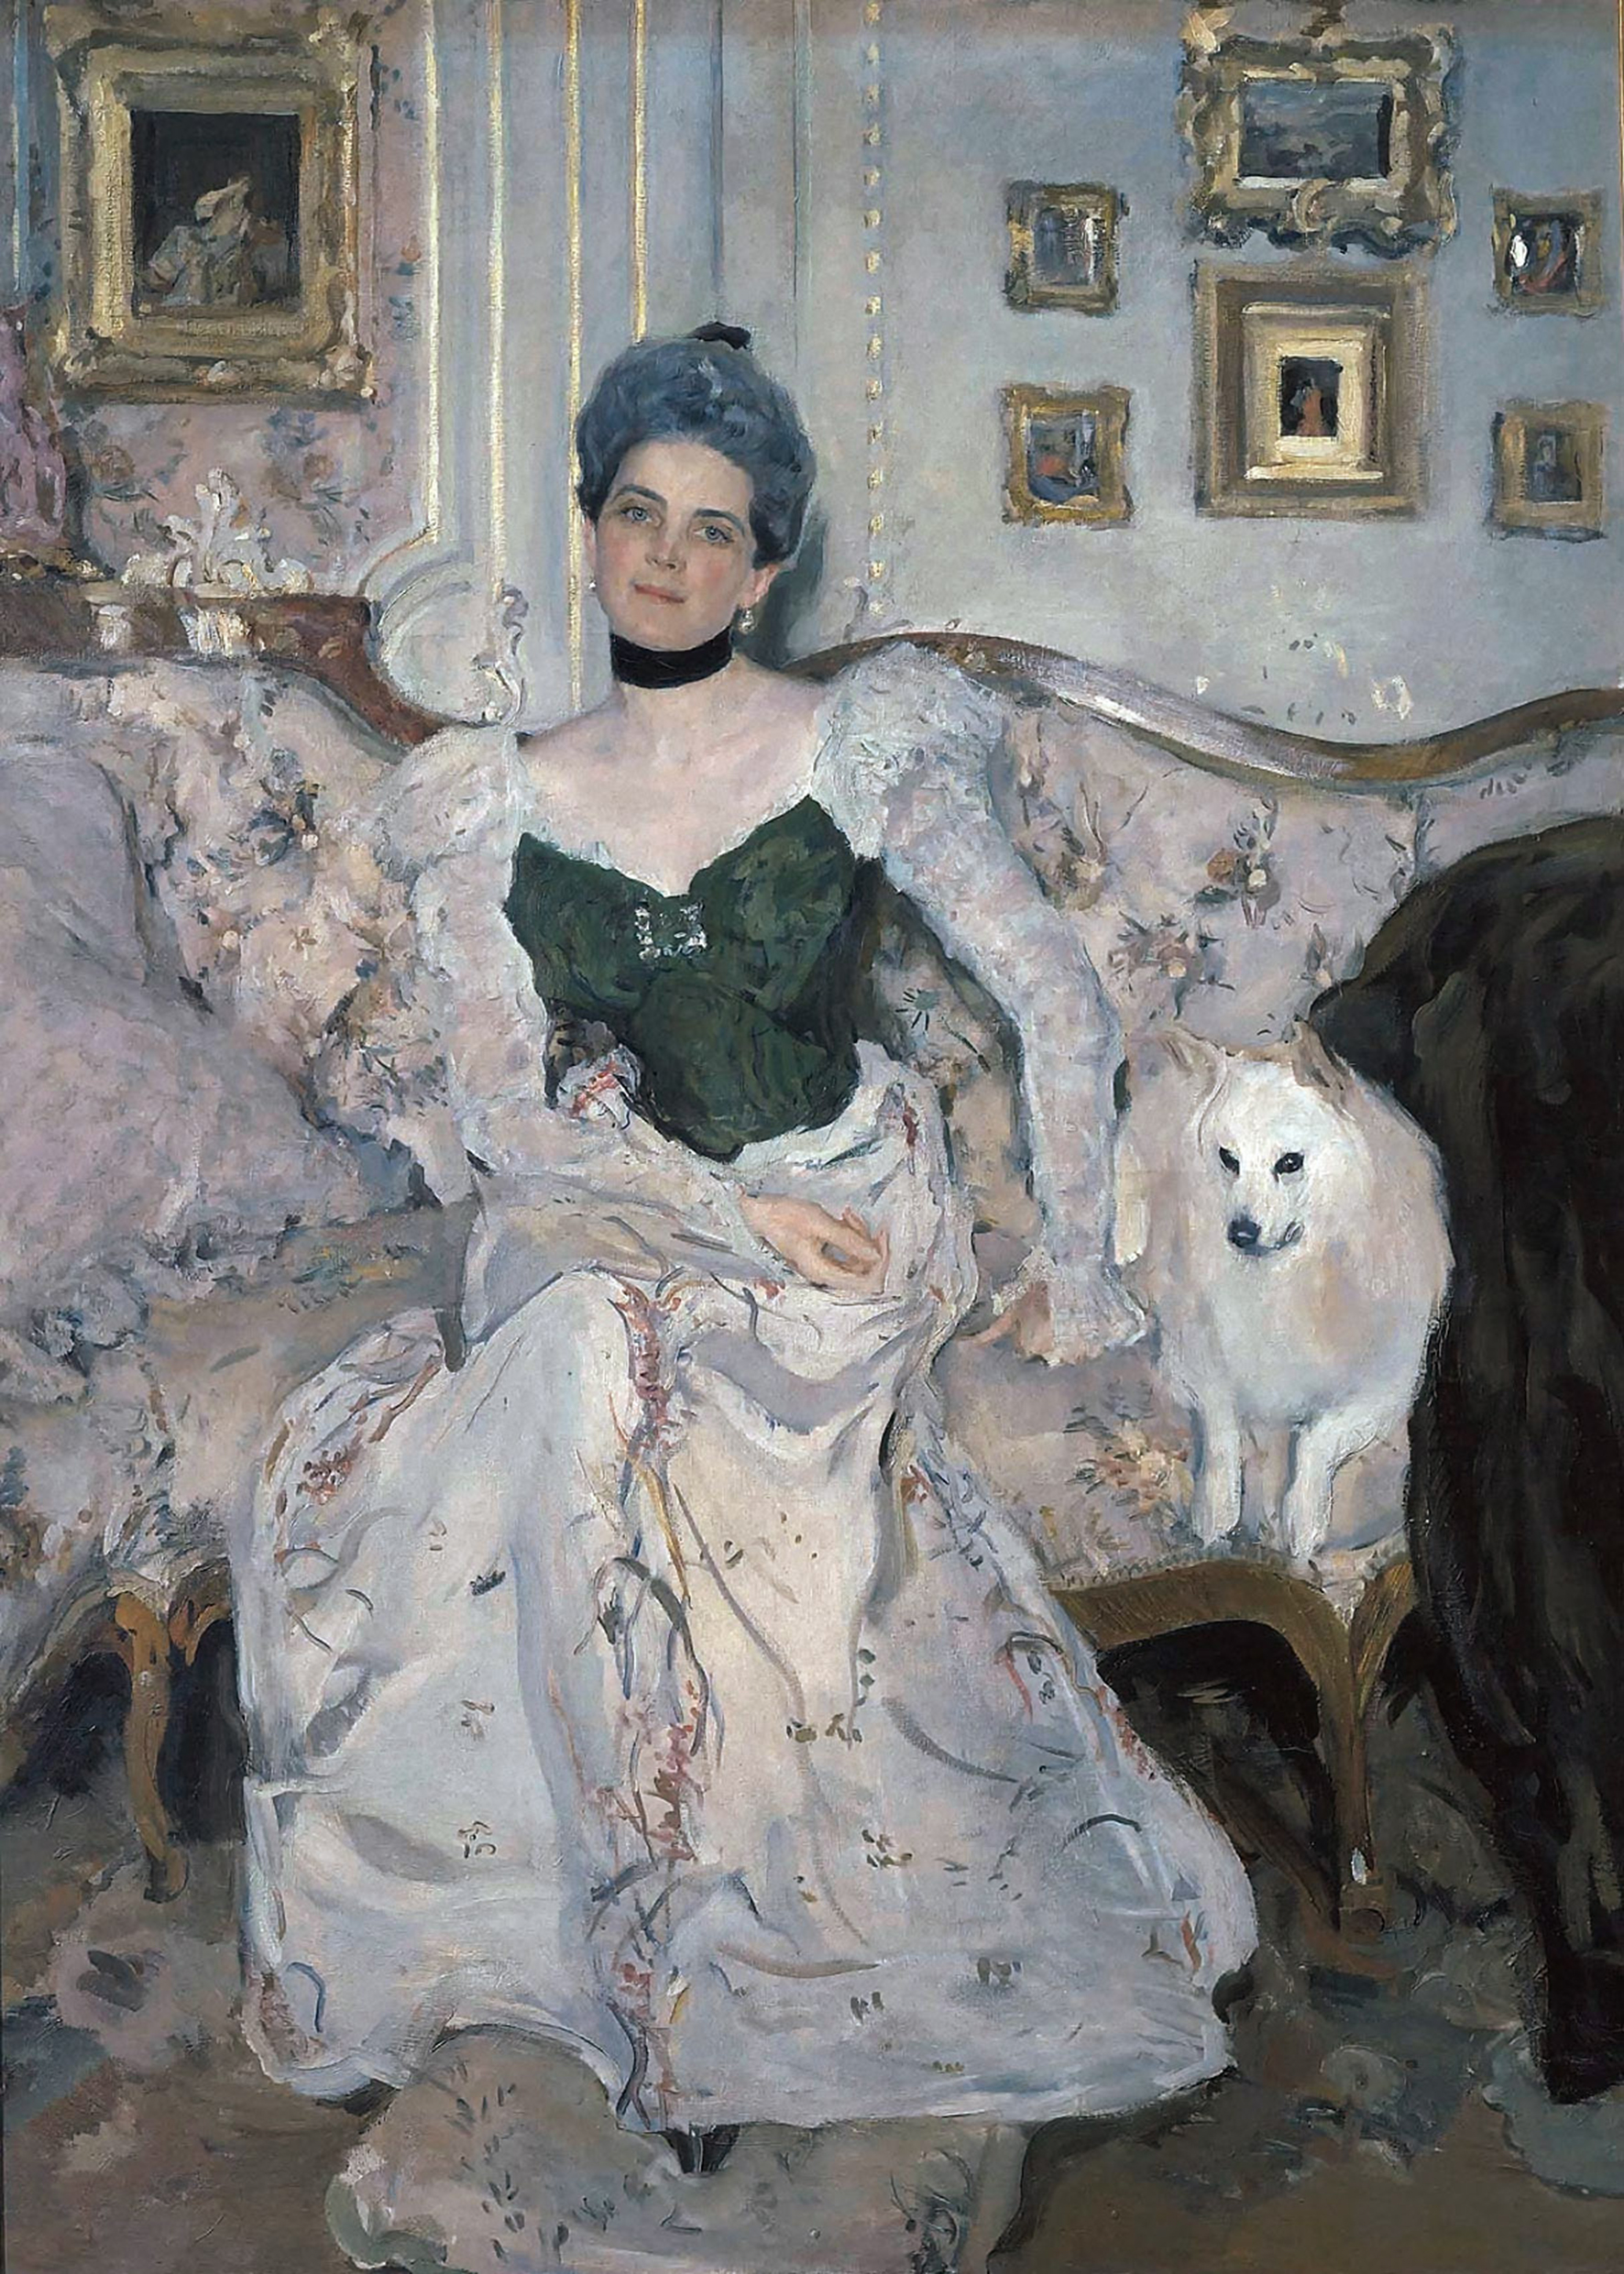 Zinaida Nikolajevna Jusupovová by Valentin Serov - 1902 